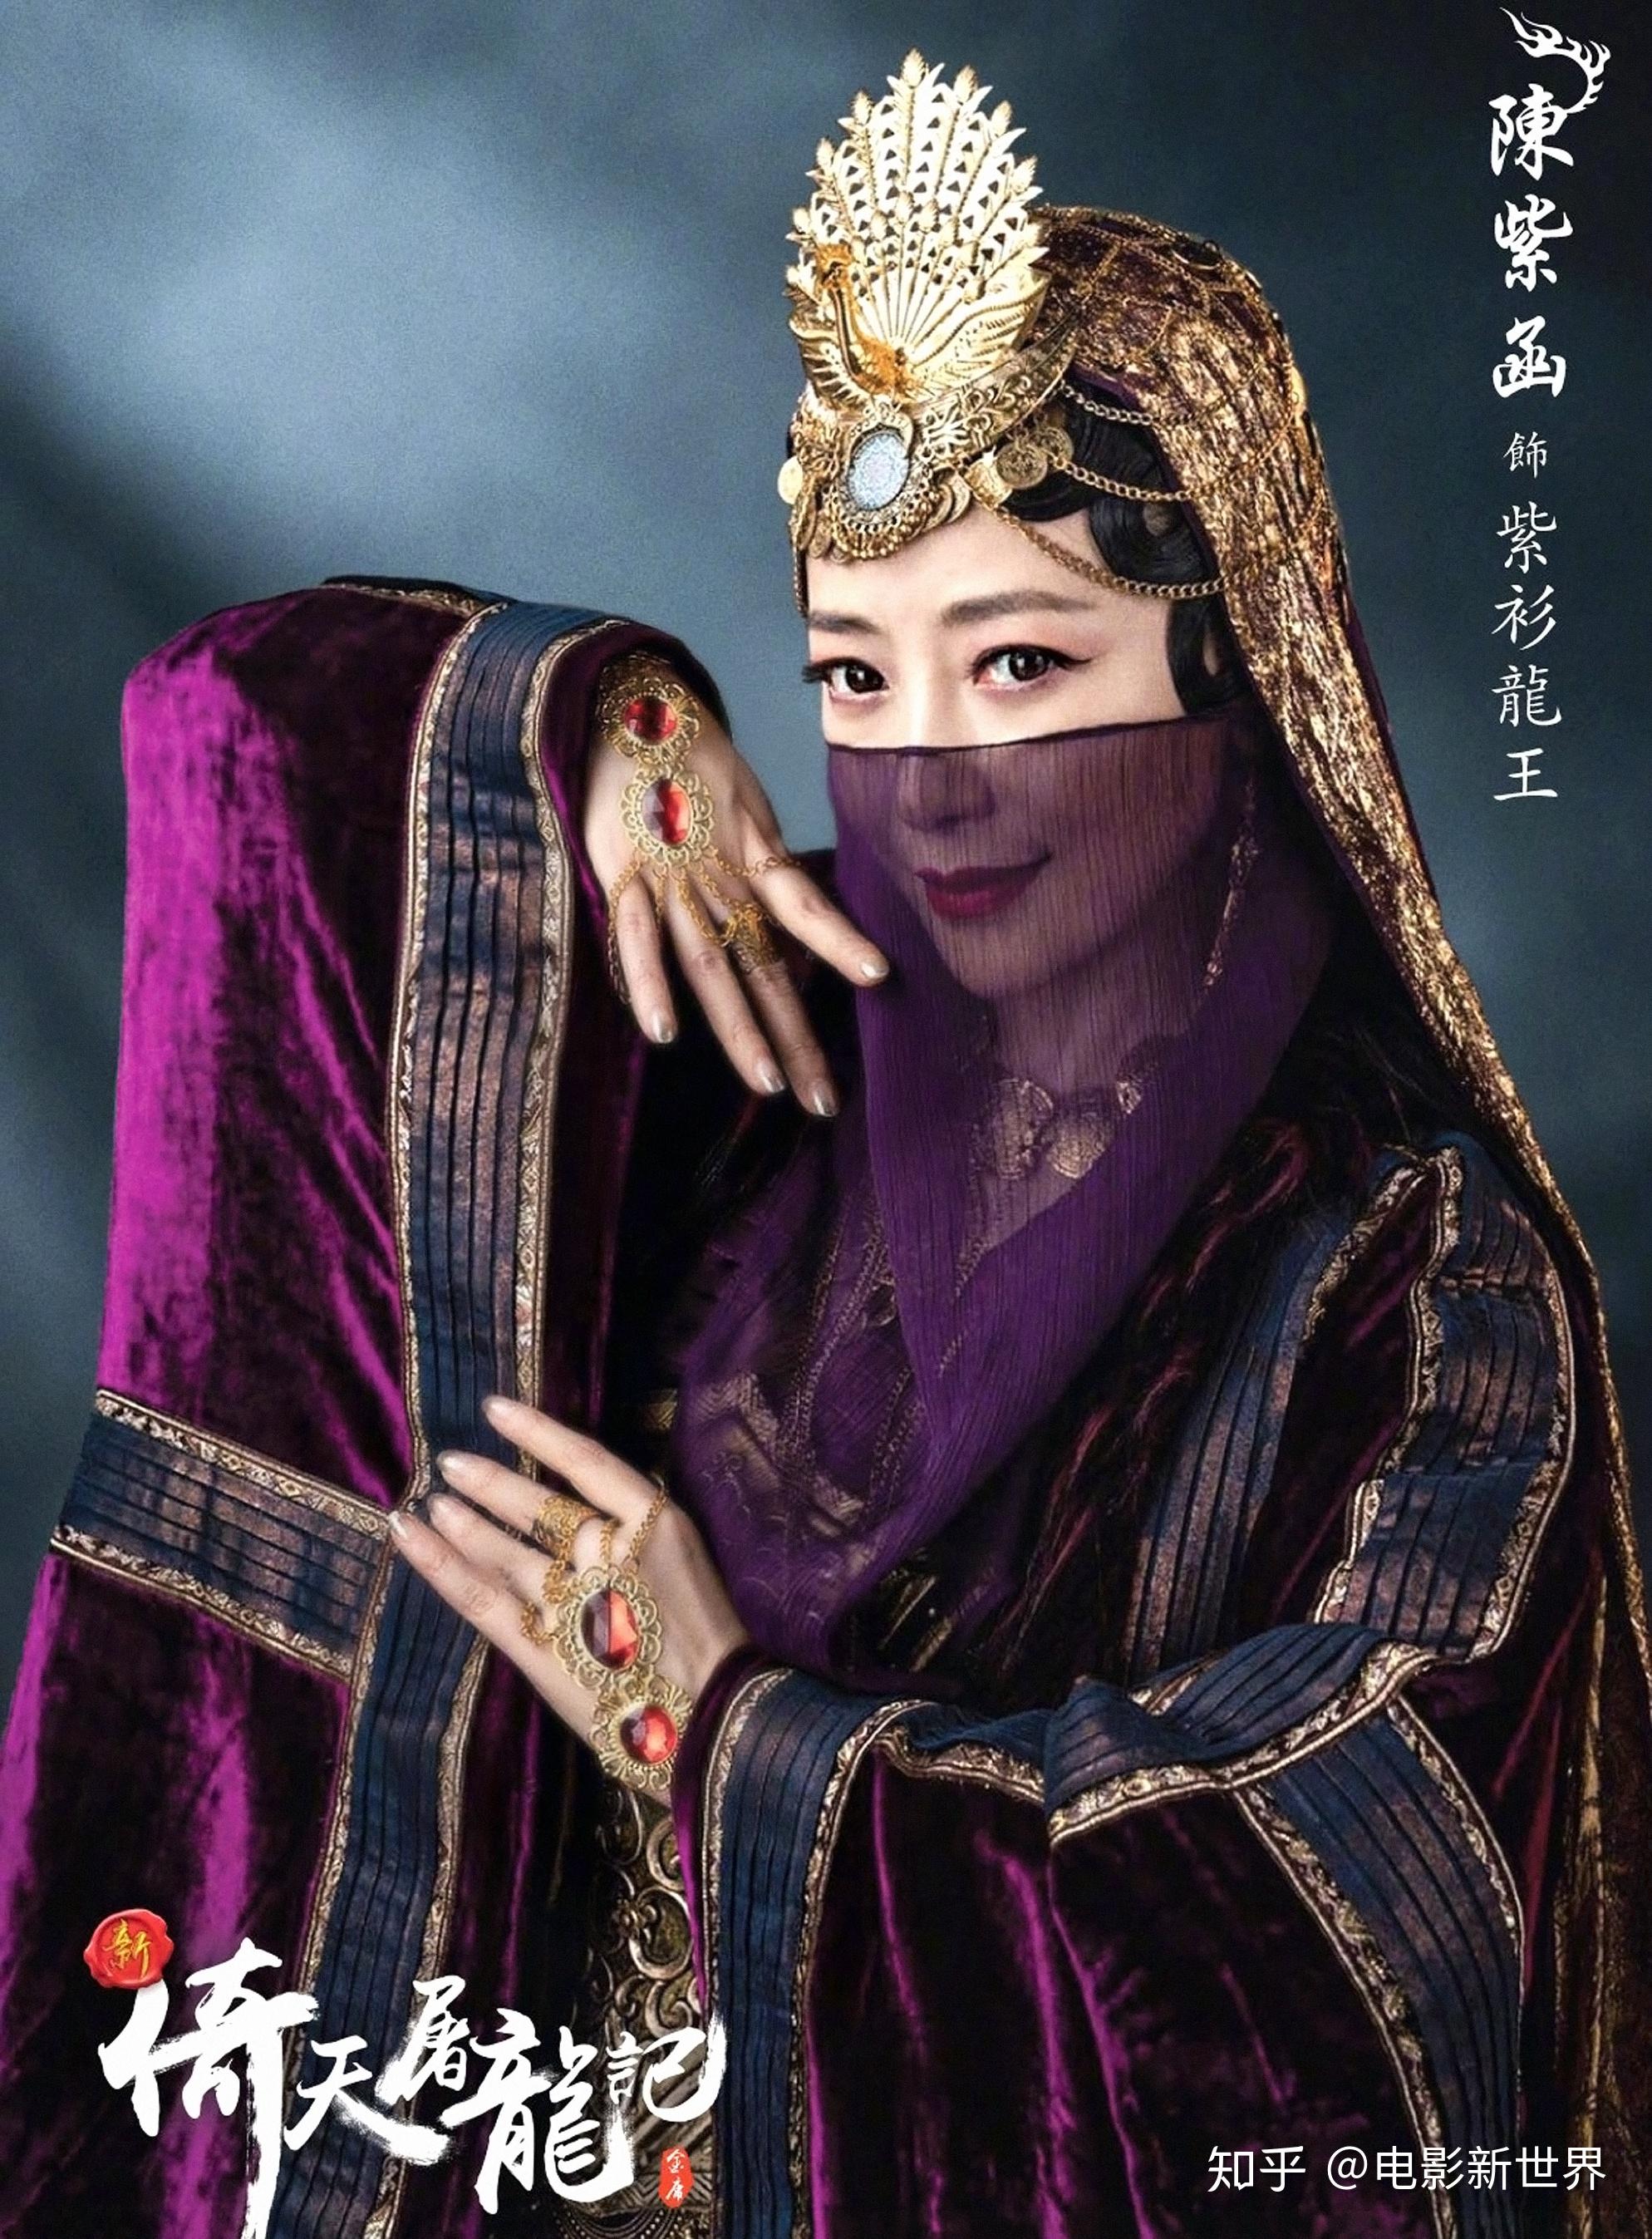 紫衫龙王倚天屠龙记中的武林第一美女她的饰演者都有谁